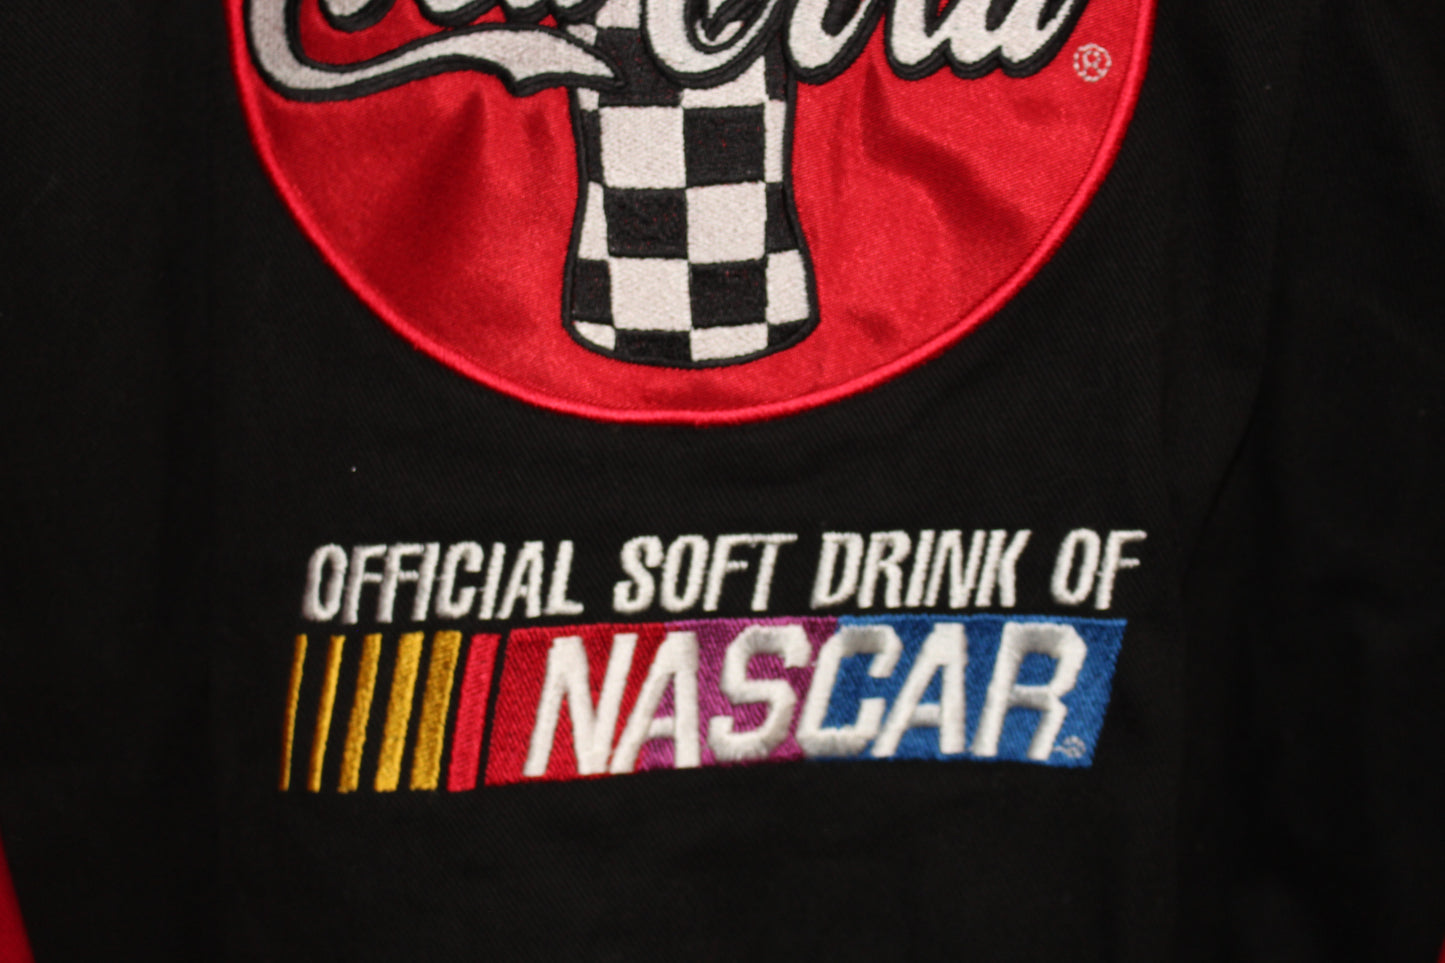 Rare Coca-Cola Racing NASCAR Twill Jacket (L)